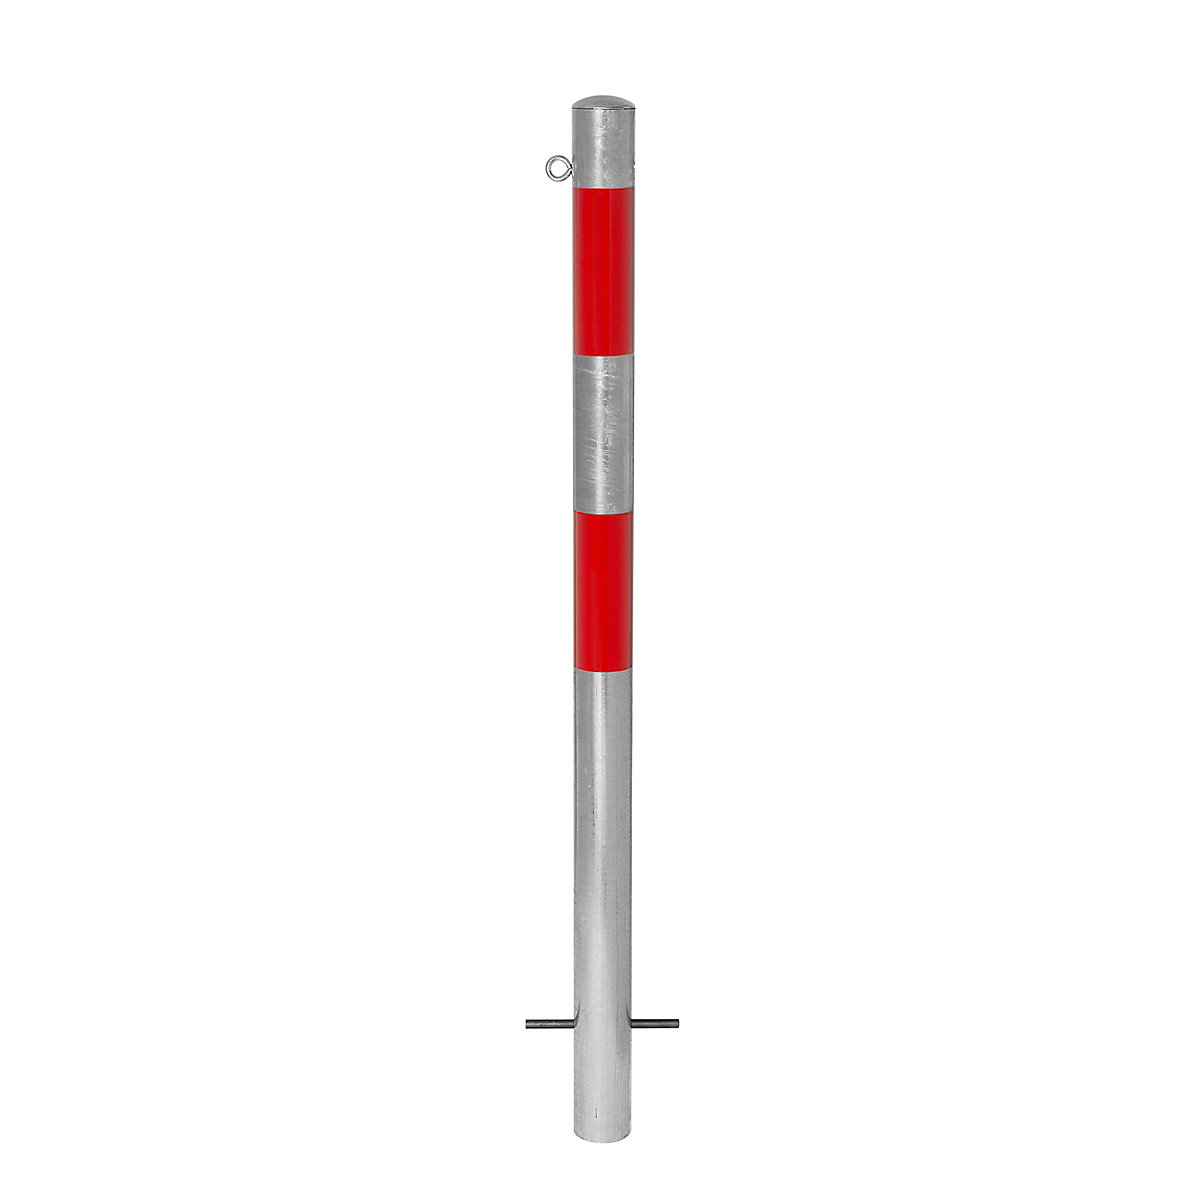 Stup za ograđivanje, za betoniranje, Ø 76 mm, vruće pocinčana izvedba / reflektiranje u crvenoj boji, 1 ušica-11